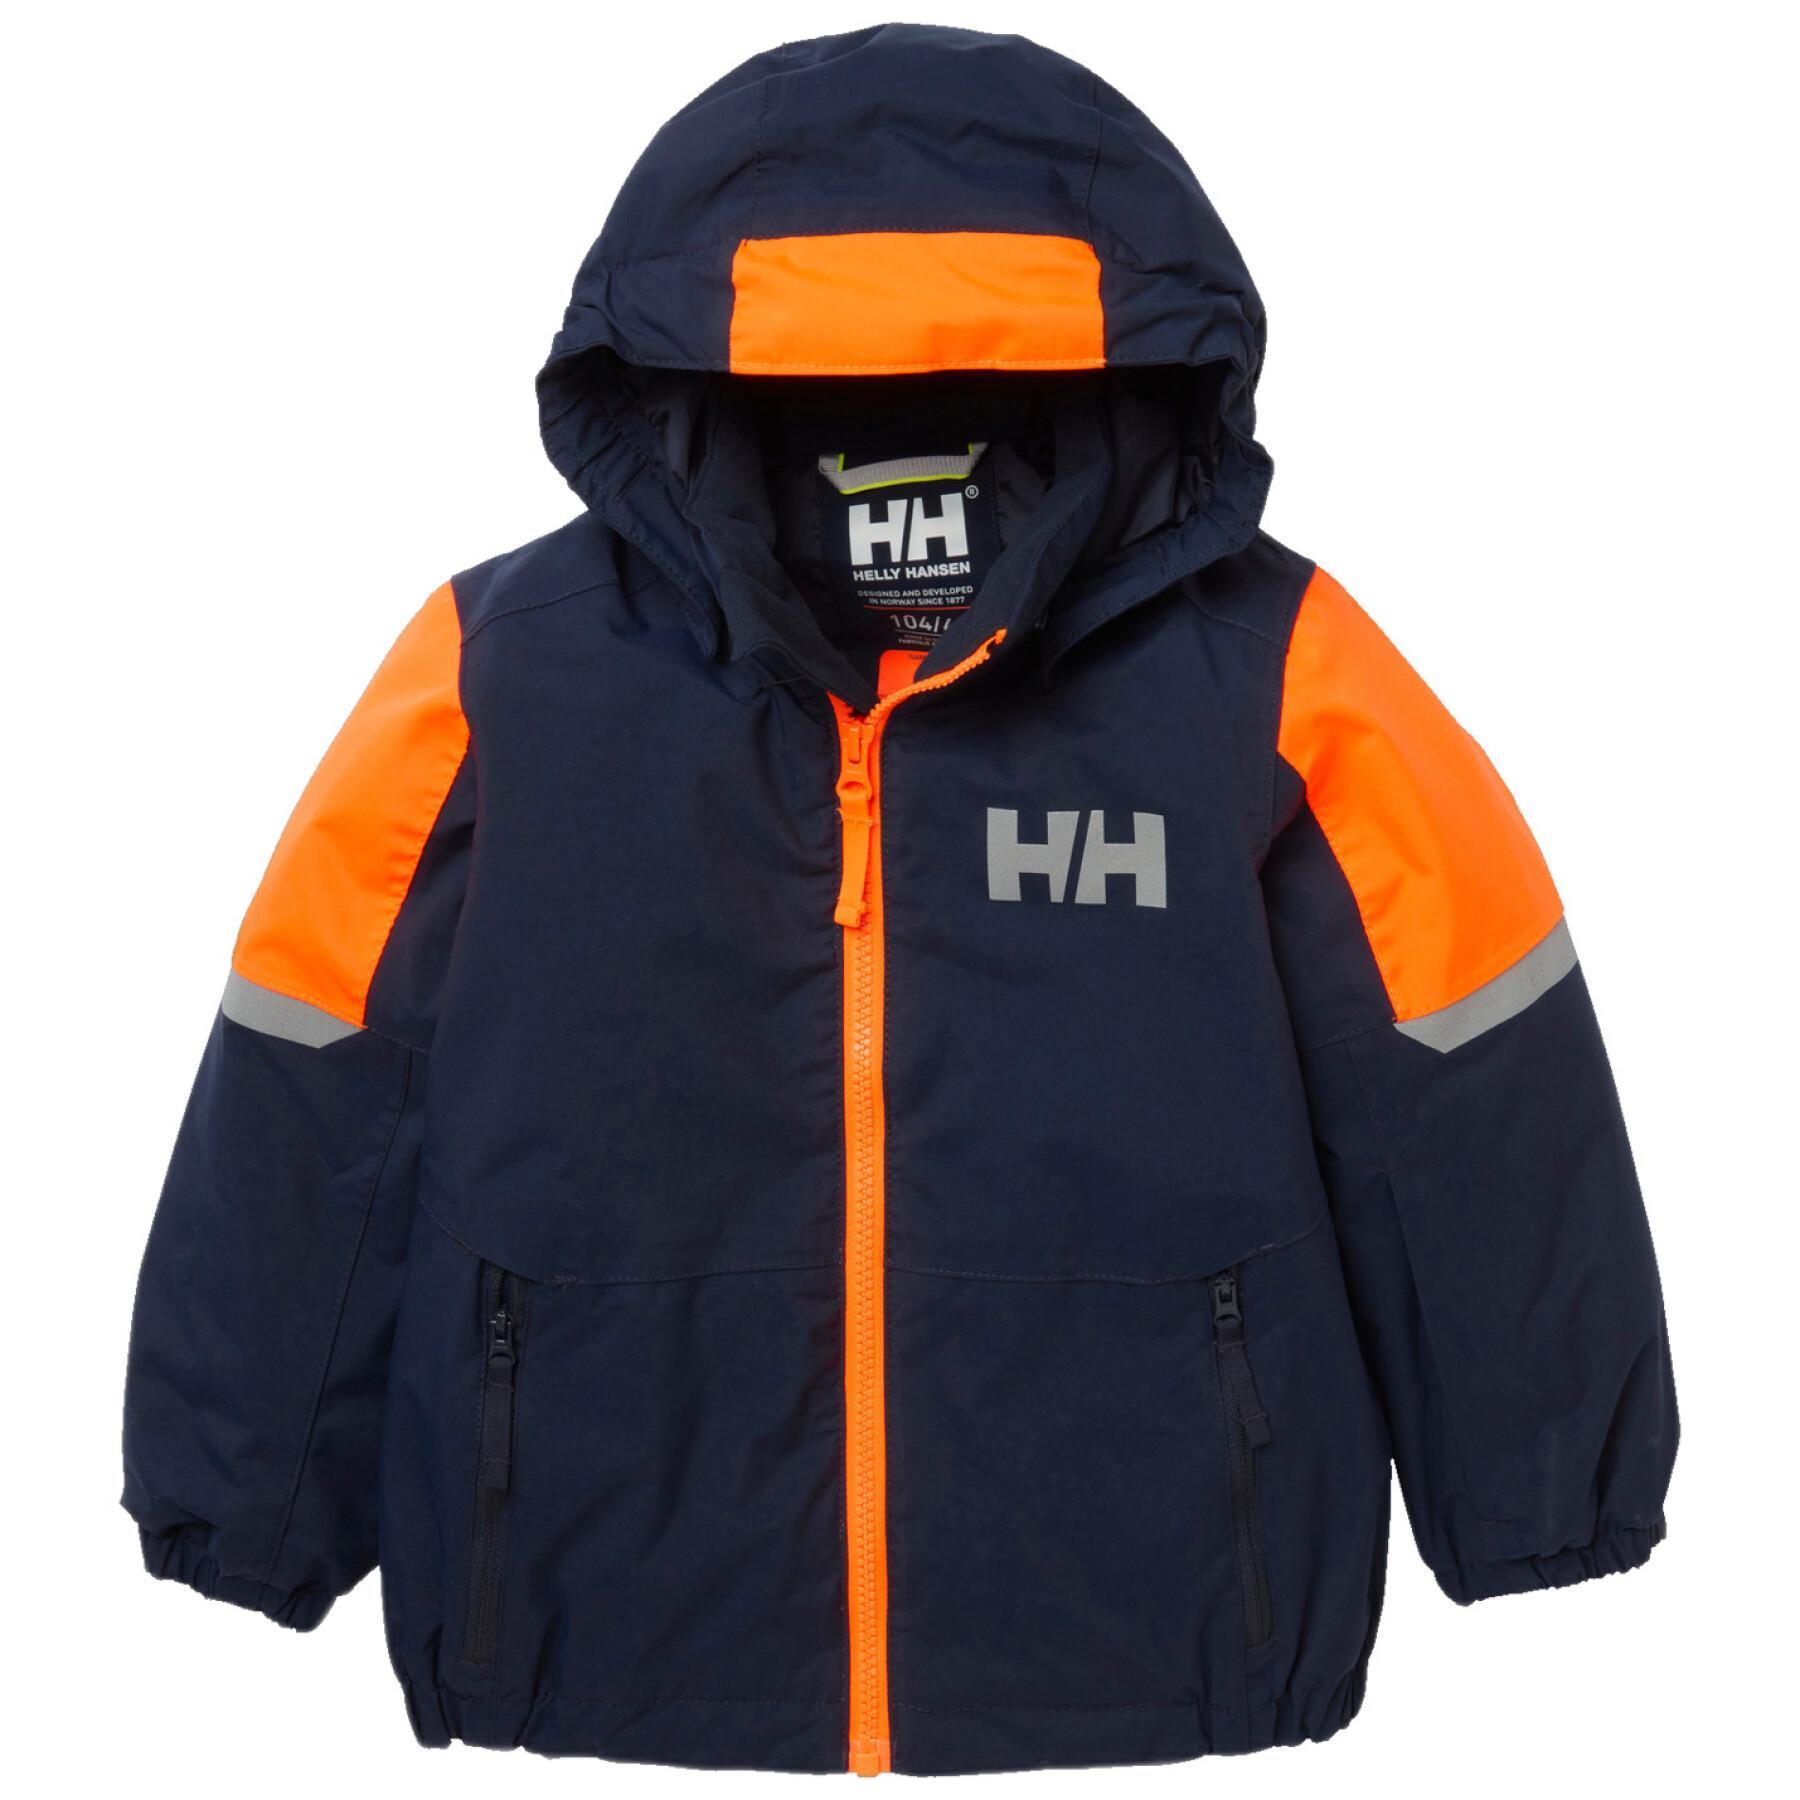 Children's ski jacket Helly Hansen Rider 2.0